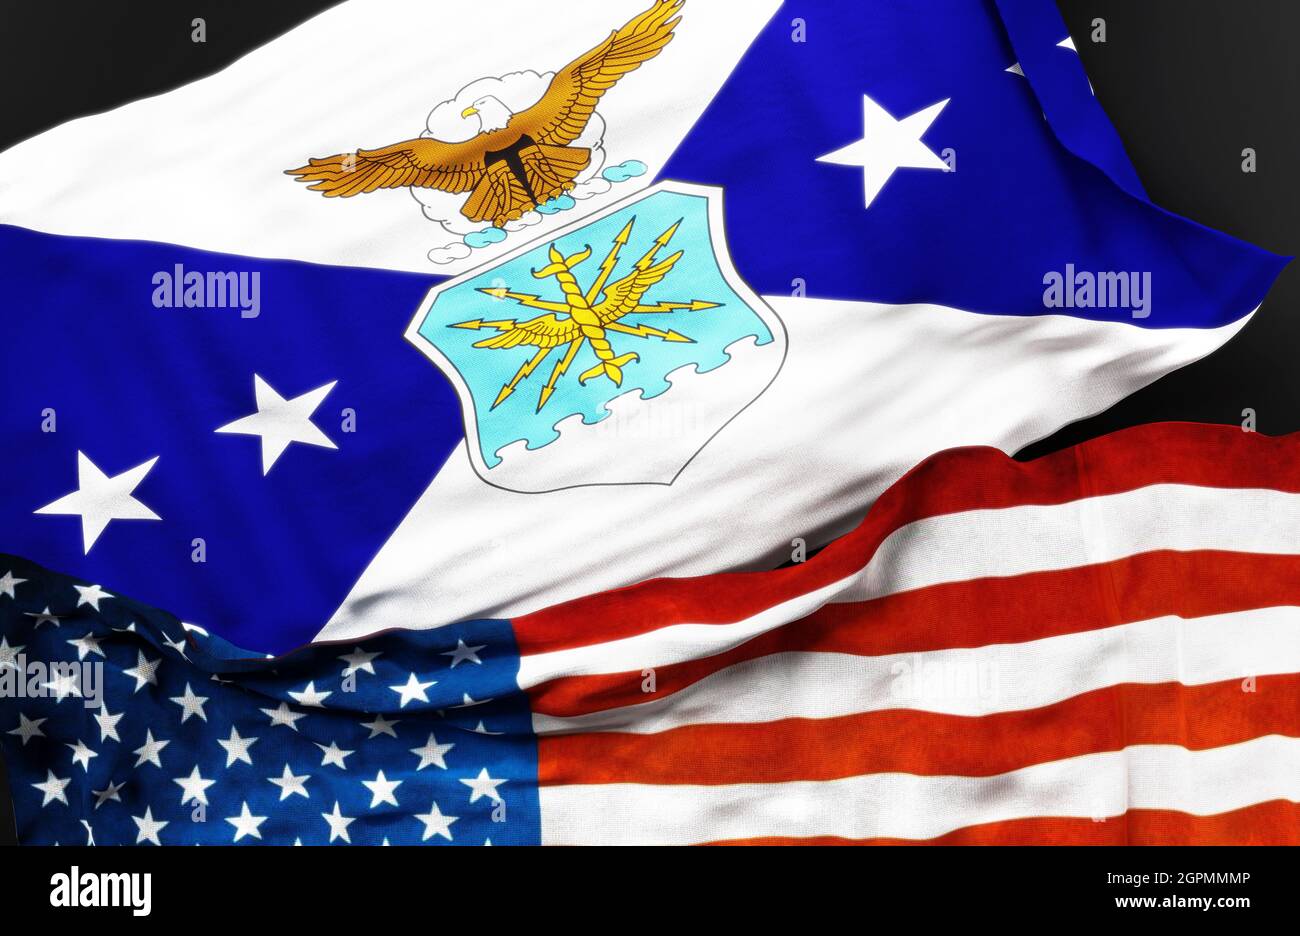 Flagge des stellvertretenden Stabschefs der Luftwaffe zusammen mit einer Flagge der Vereinigten Staaten von Amerika als Symbol der Einheit zwischen ihnen, 3d-Illustration Stockfoto